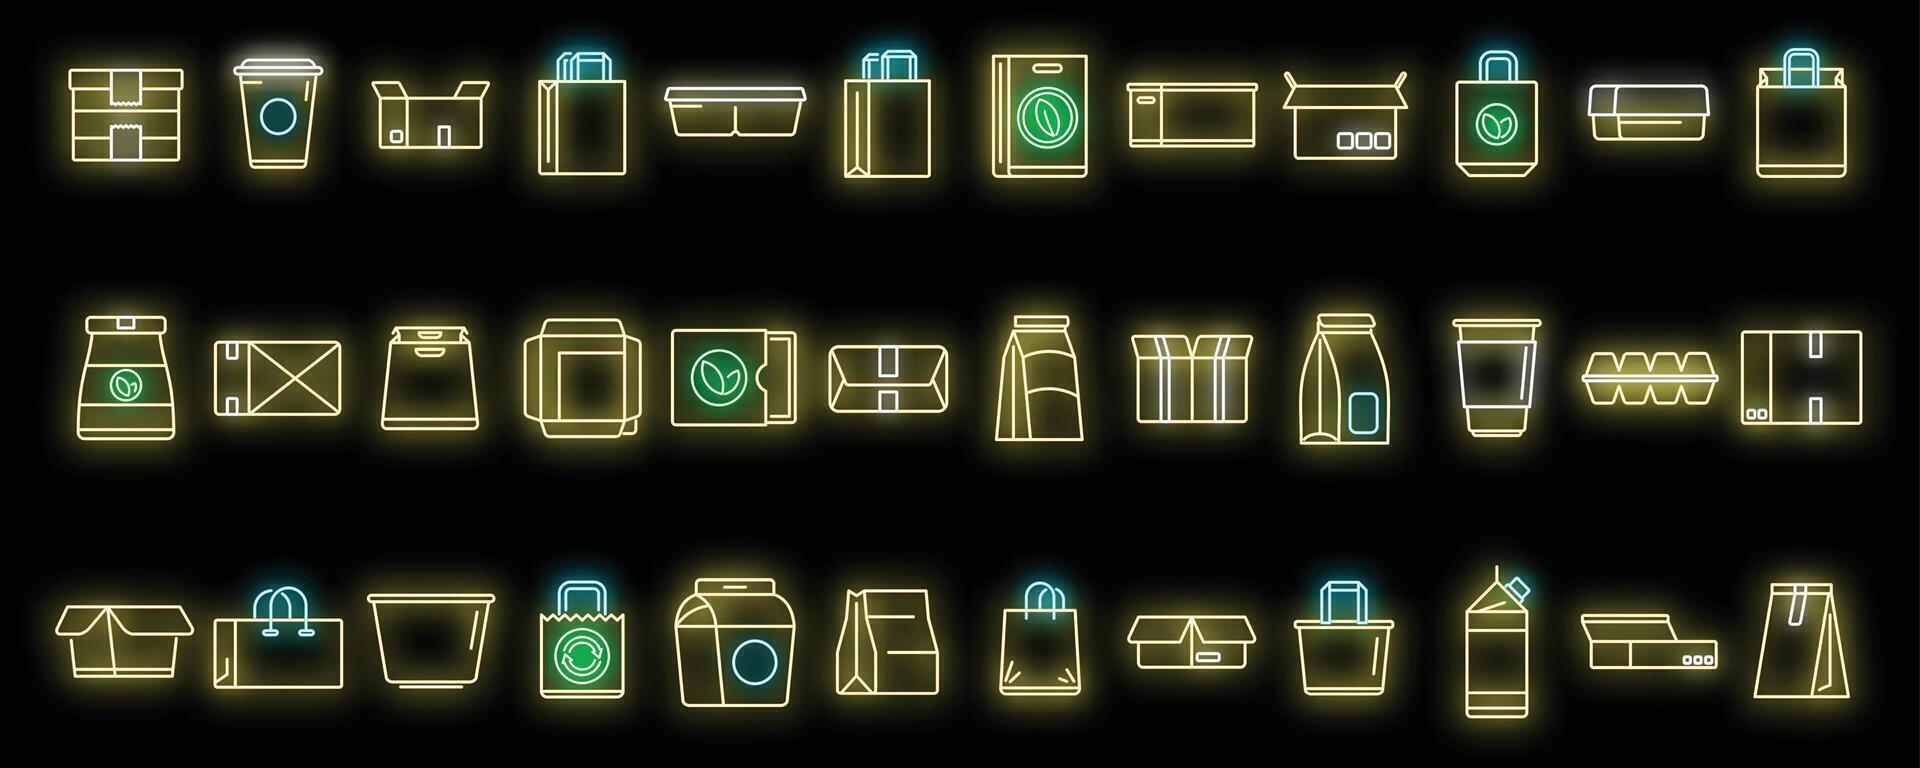 conjunto de ícones de embalagens ecológicas vetor neon